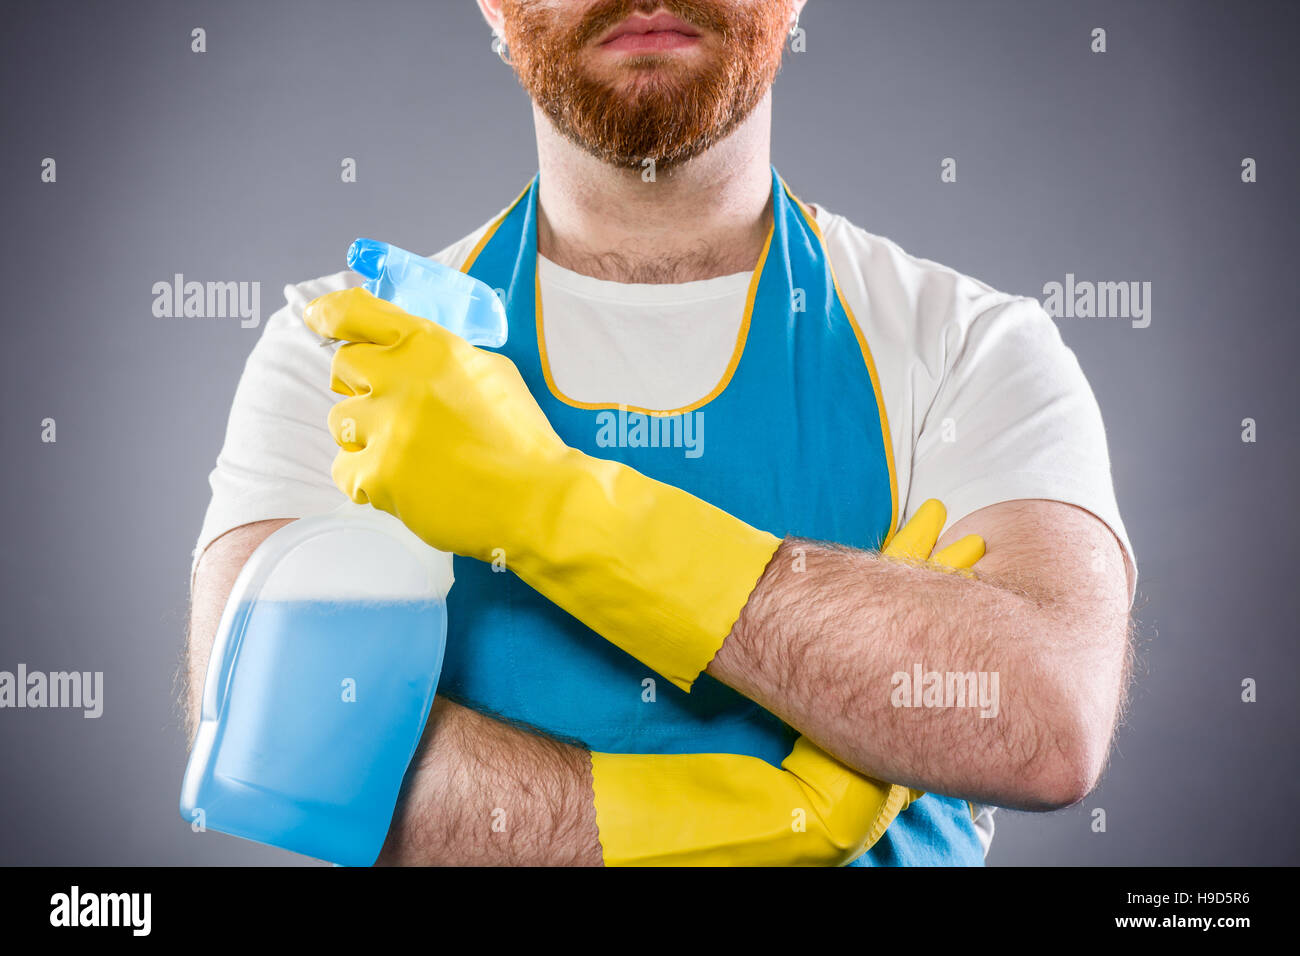 Sauberer Mann mit verschränkten Armen hält ein Waschmittel, eine Schürze und Plastikhandschuhe tragen Stockfoto